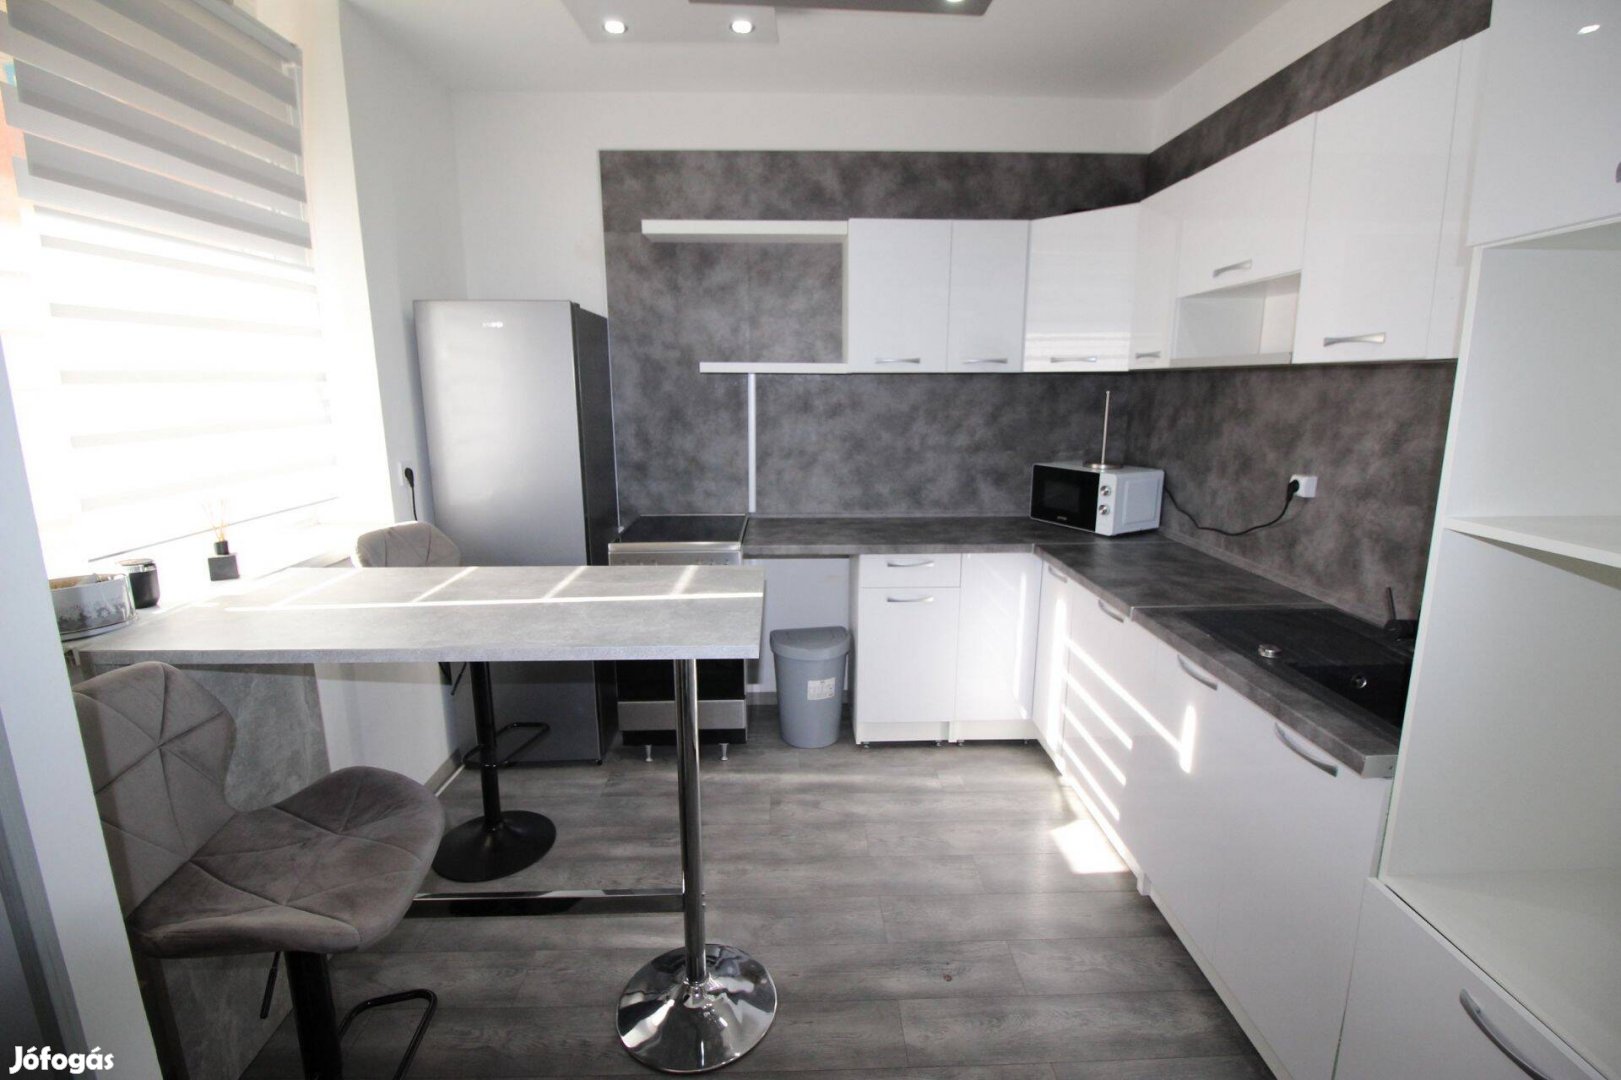 Damjanich lakóparkban 60 m2-es 2 szoba-nappalis újszerű lakás eladó